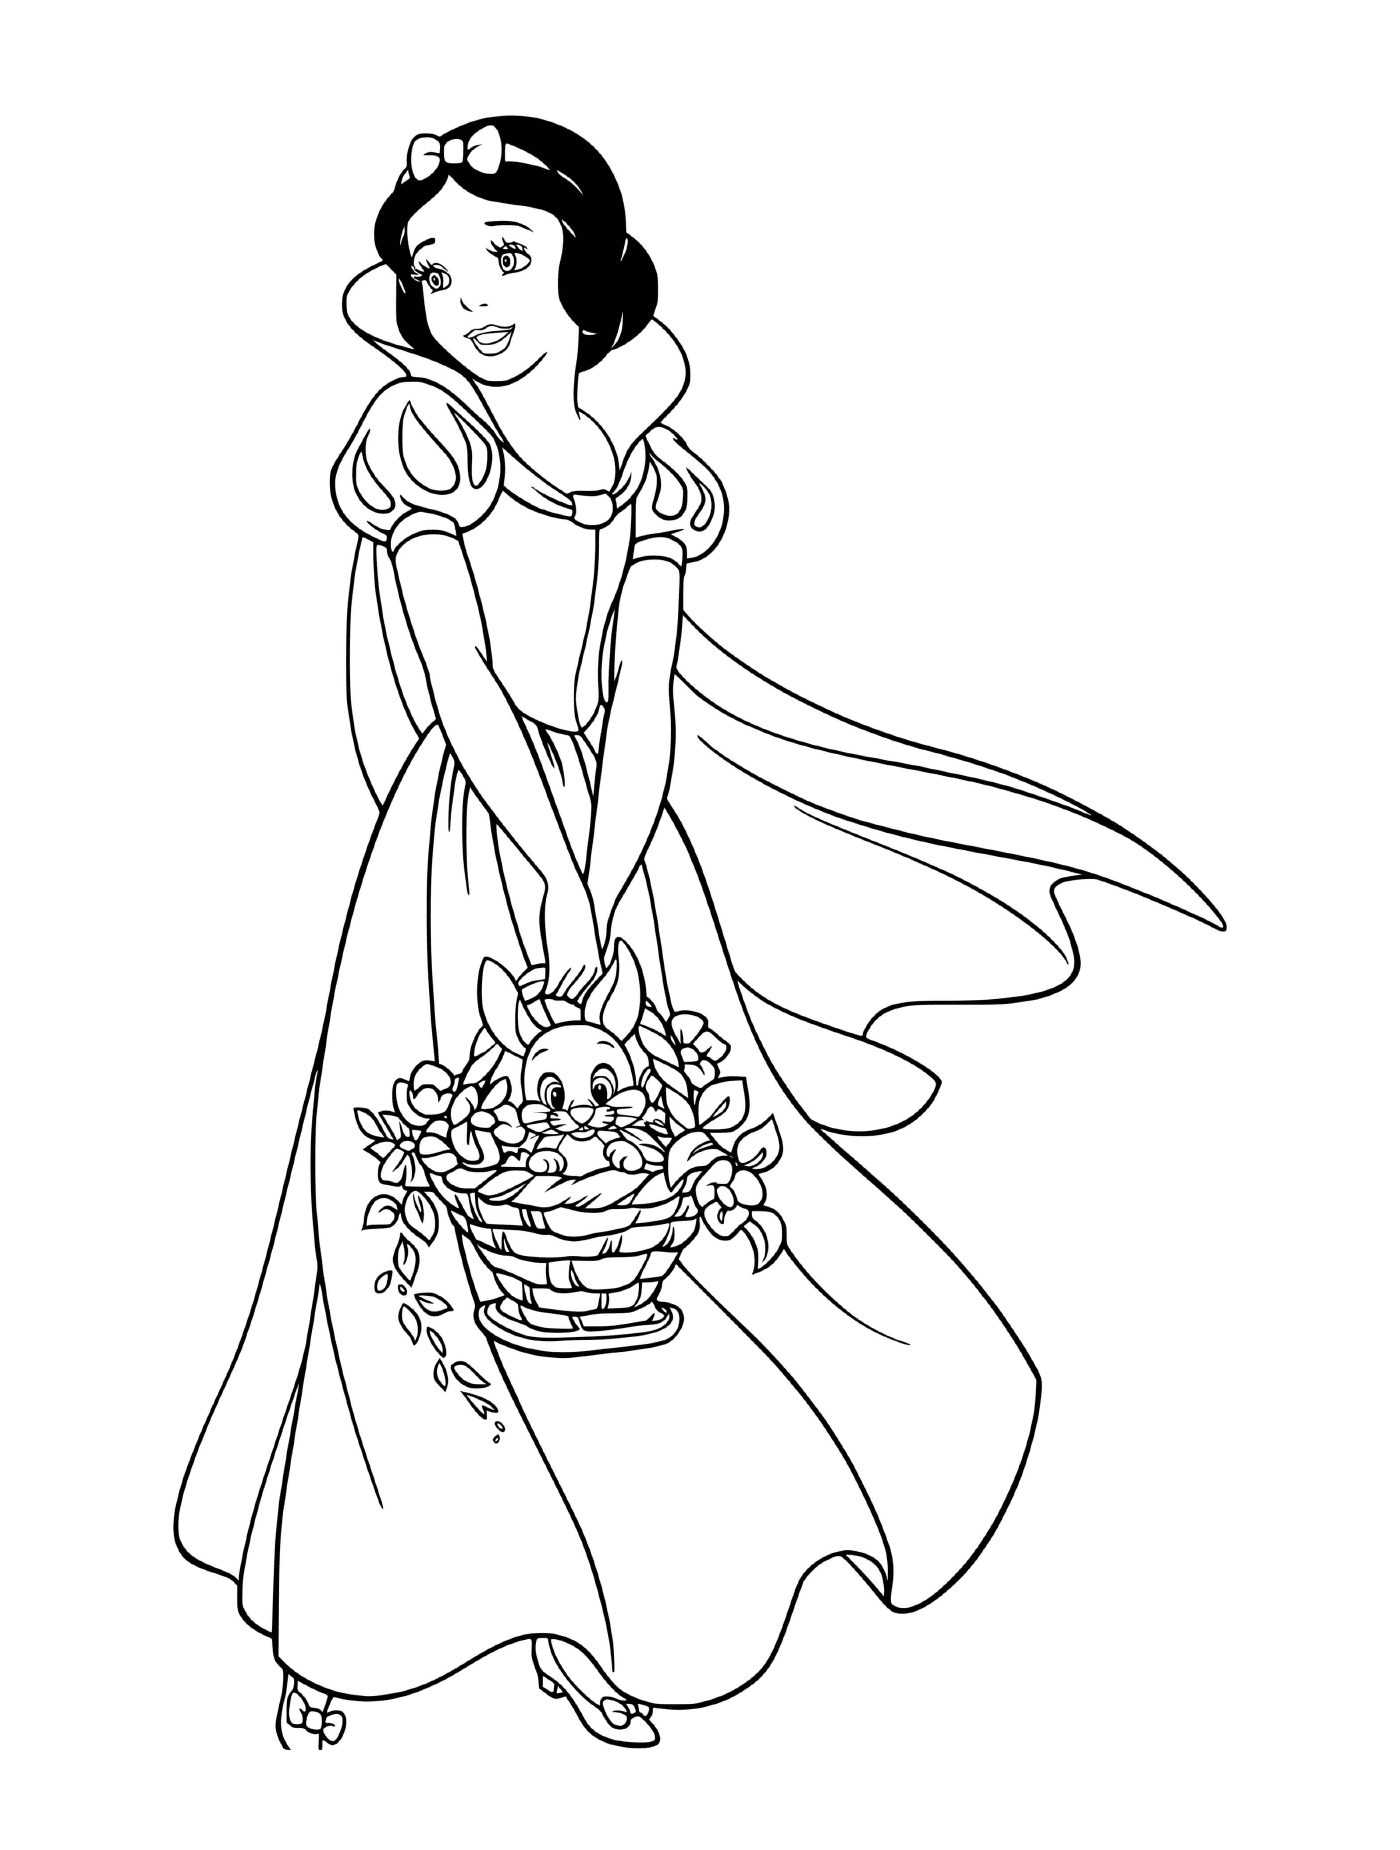  أميرة حاملة سلة من الأزهار في (سنو وايت) 